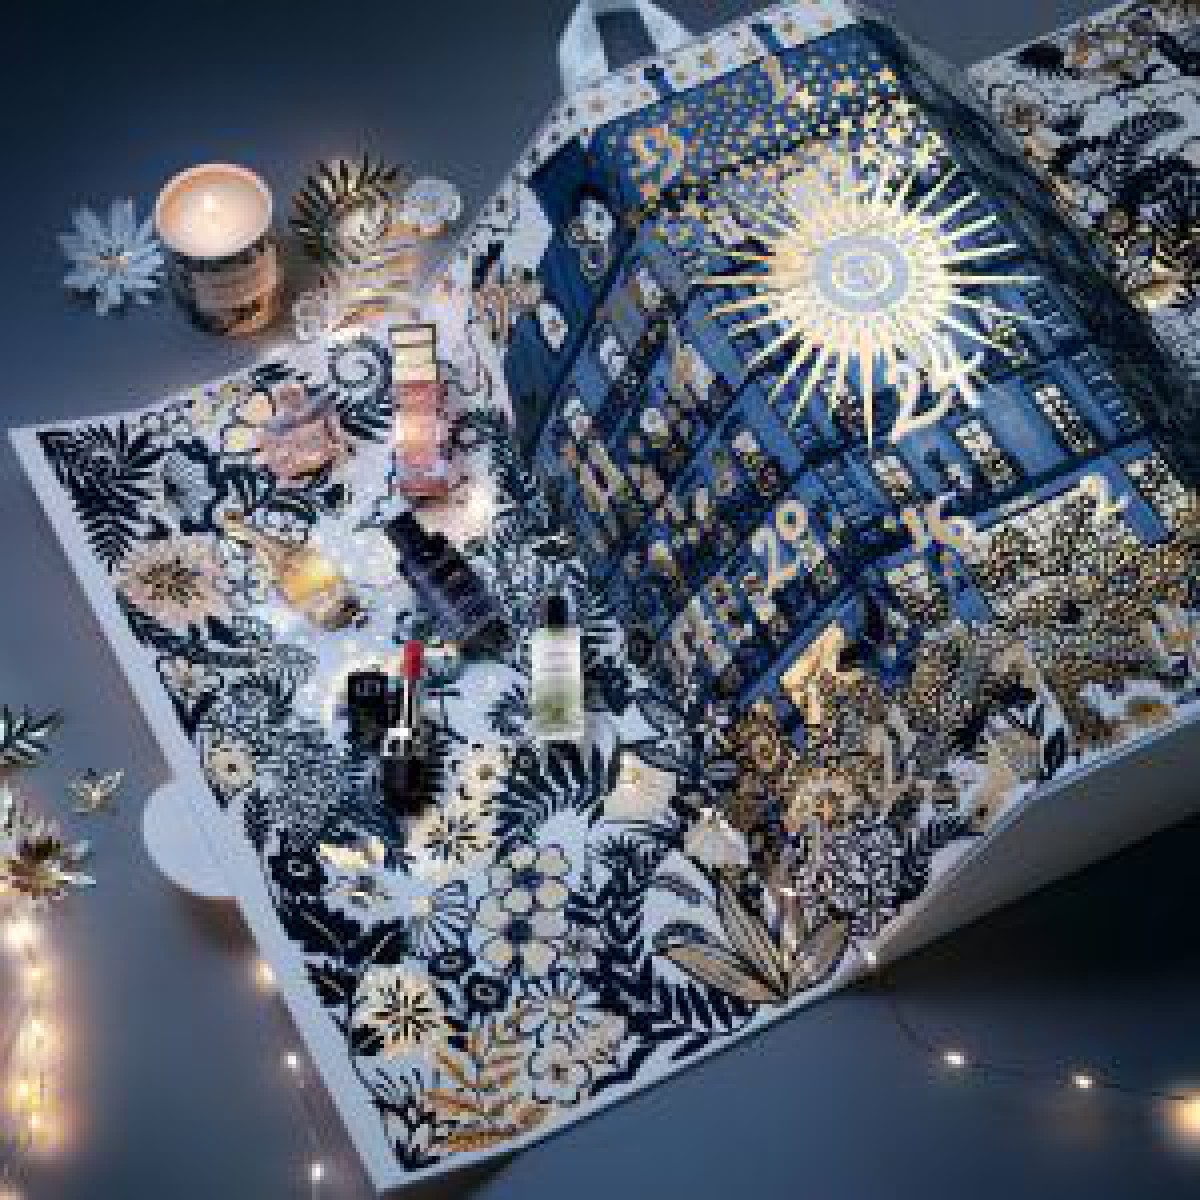 「ディオール」アドベントカレンダー発売、花々に囲まれたガーデンをイメージ